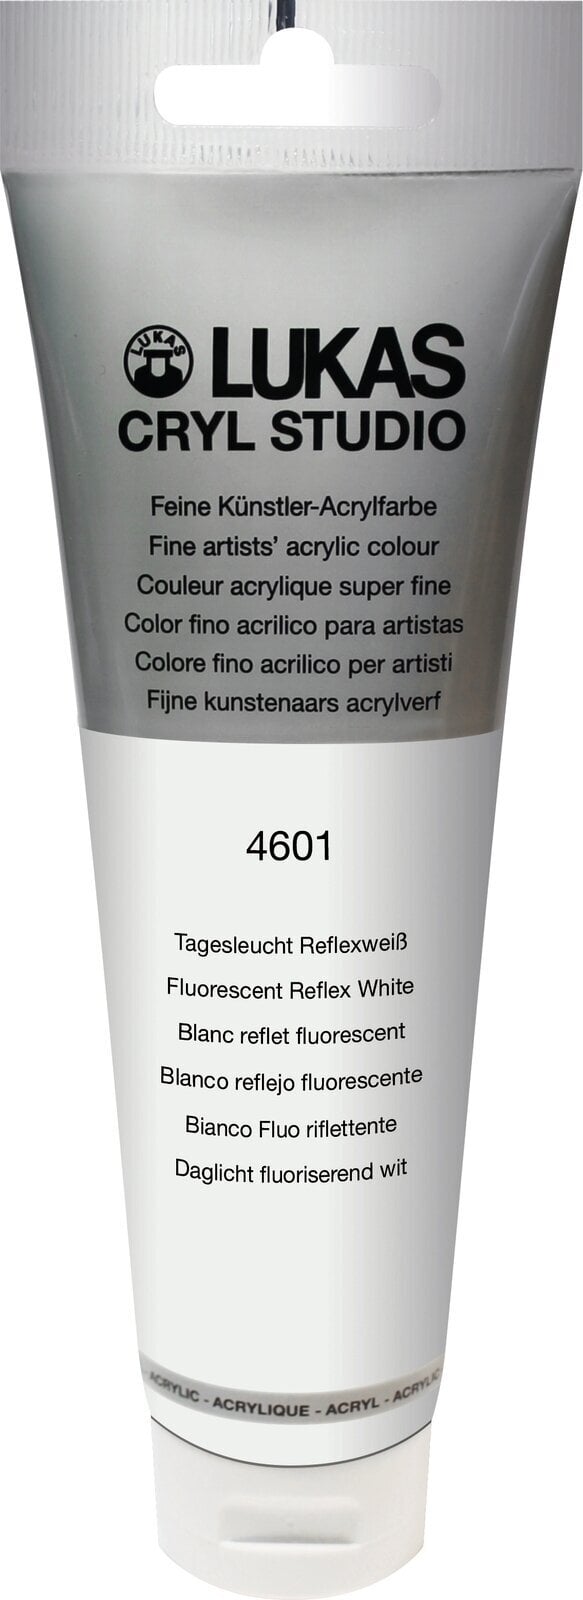 Culoare acrilică Lukas Cryl Studio Acrylic Paint Plastic Tube Vopsea acrilică Flourescent Reflex White 125 ml 1 buc